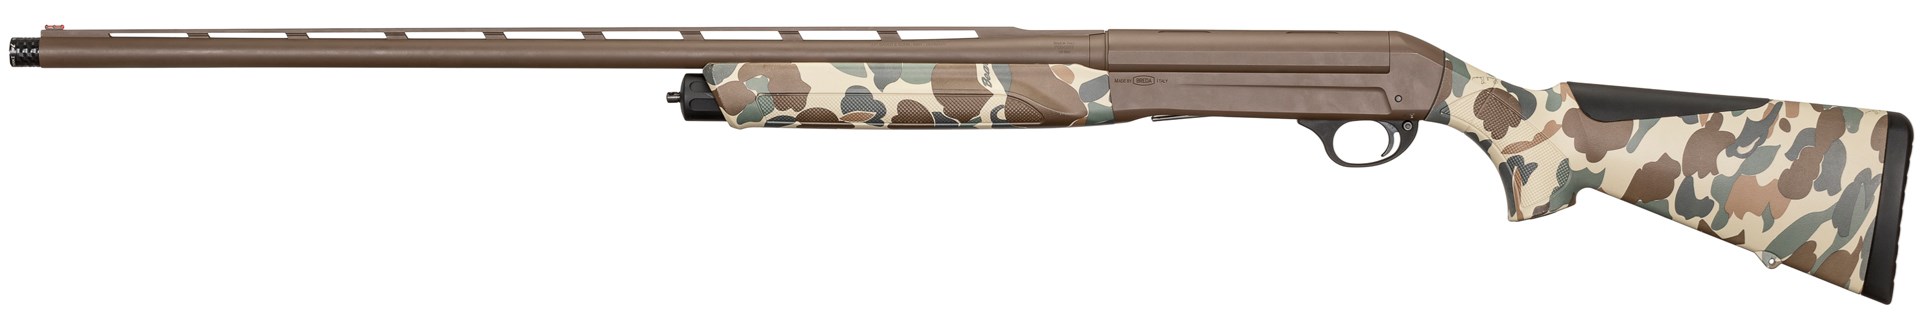 Sauer SL5 Waterfowl 12 gauge shotgun Fred Bear Old School Camouflage left-side view Brown Cerakote finish white background